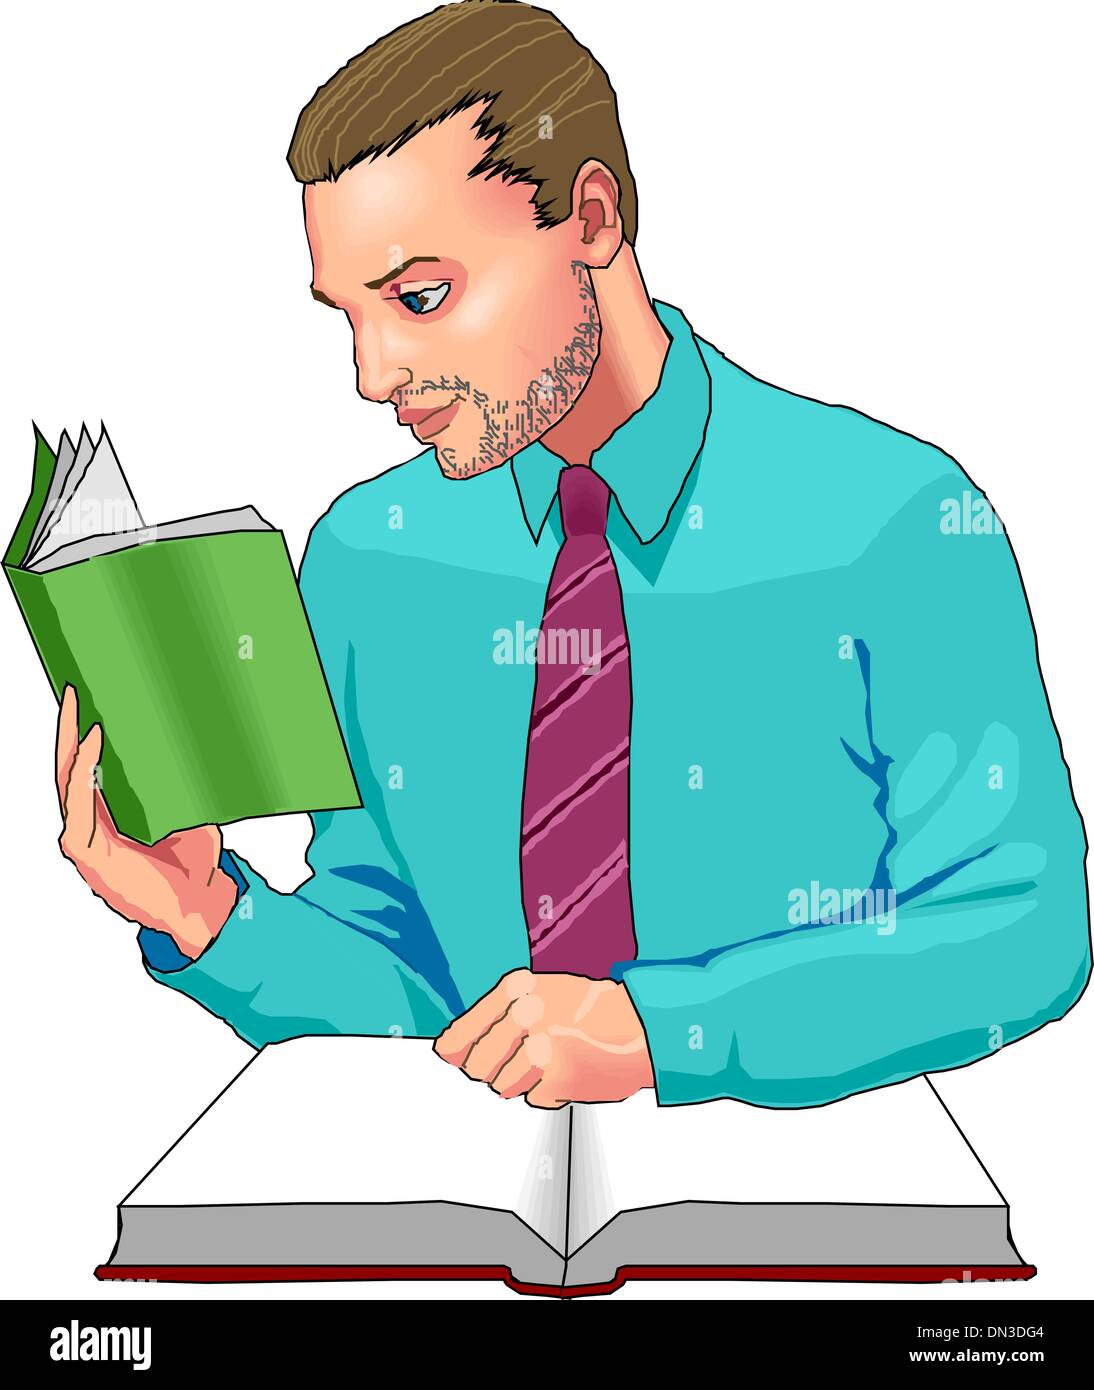 L'élève lit un livre Image Vectorielle Stock - Alamy